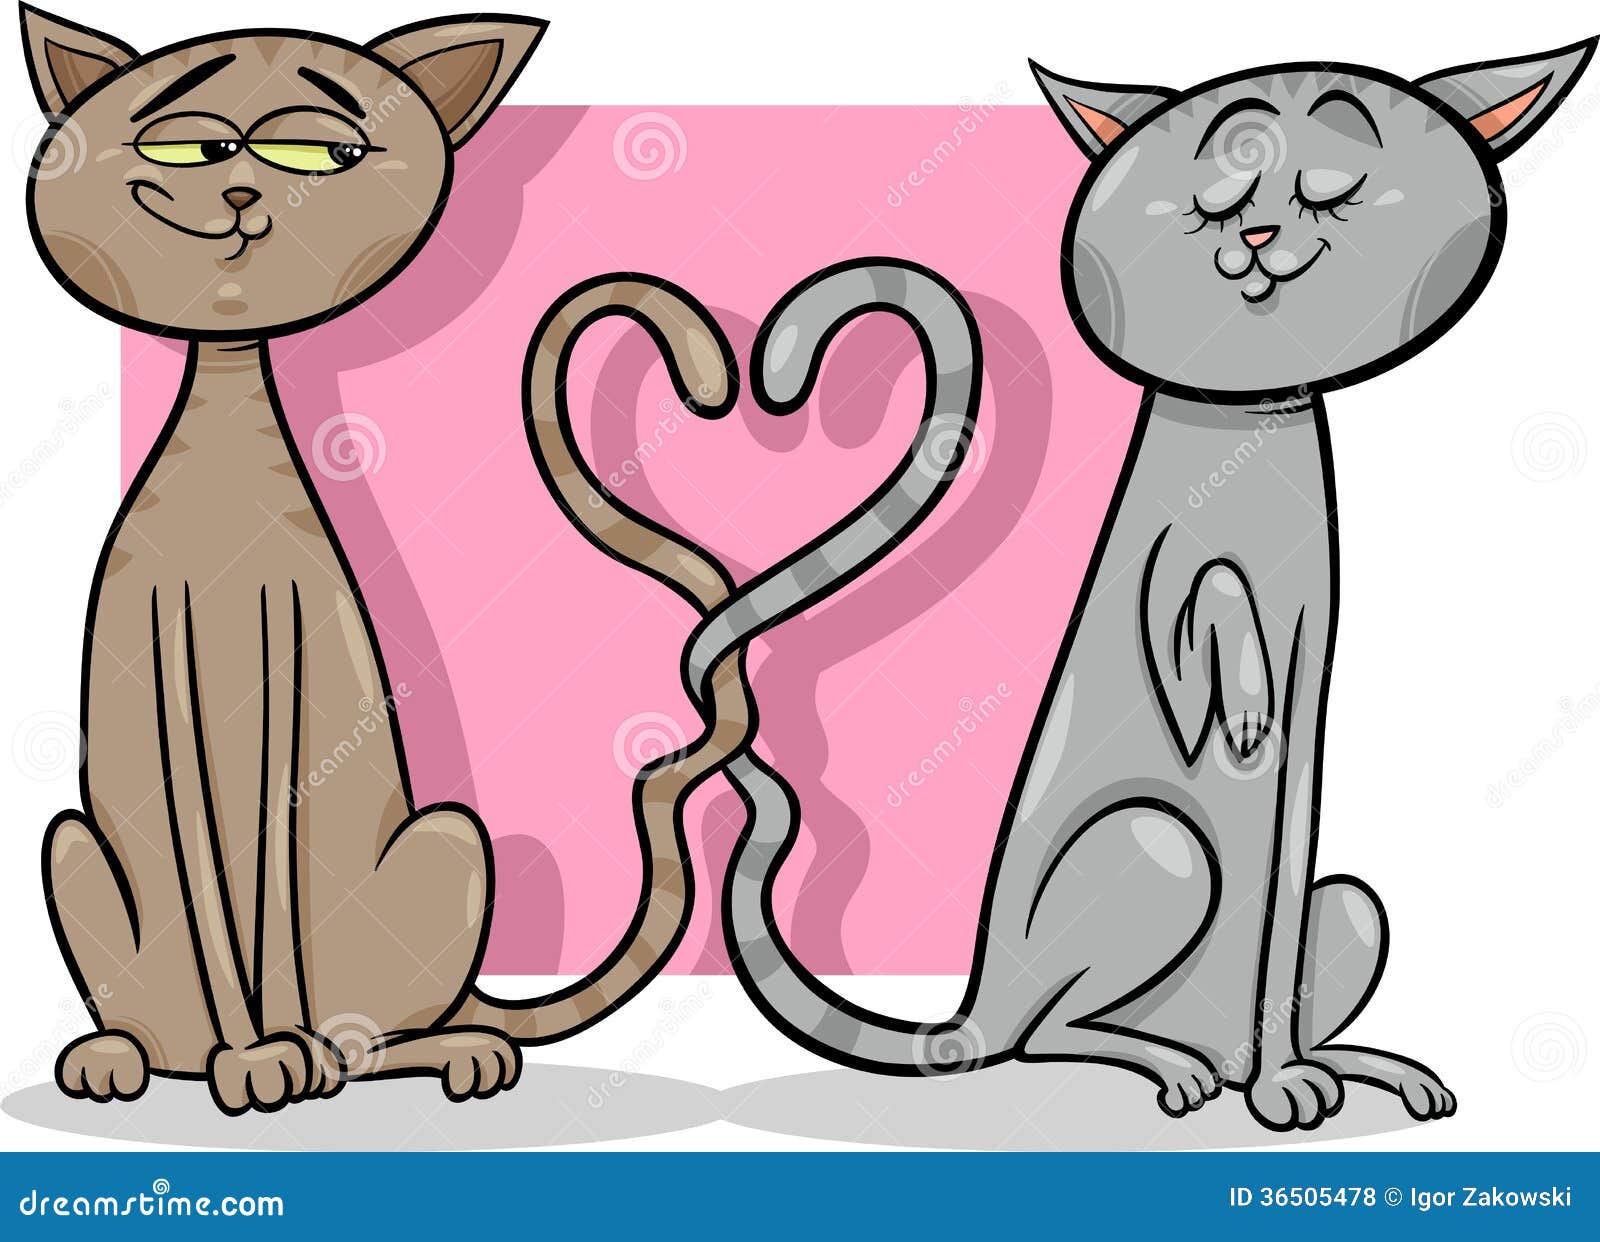 Cats in Love Cartoon Illustration Stock Vector - Illustration of emotions,  funny: 36505478